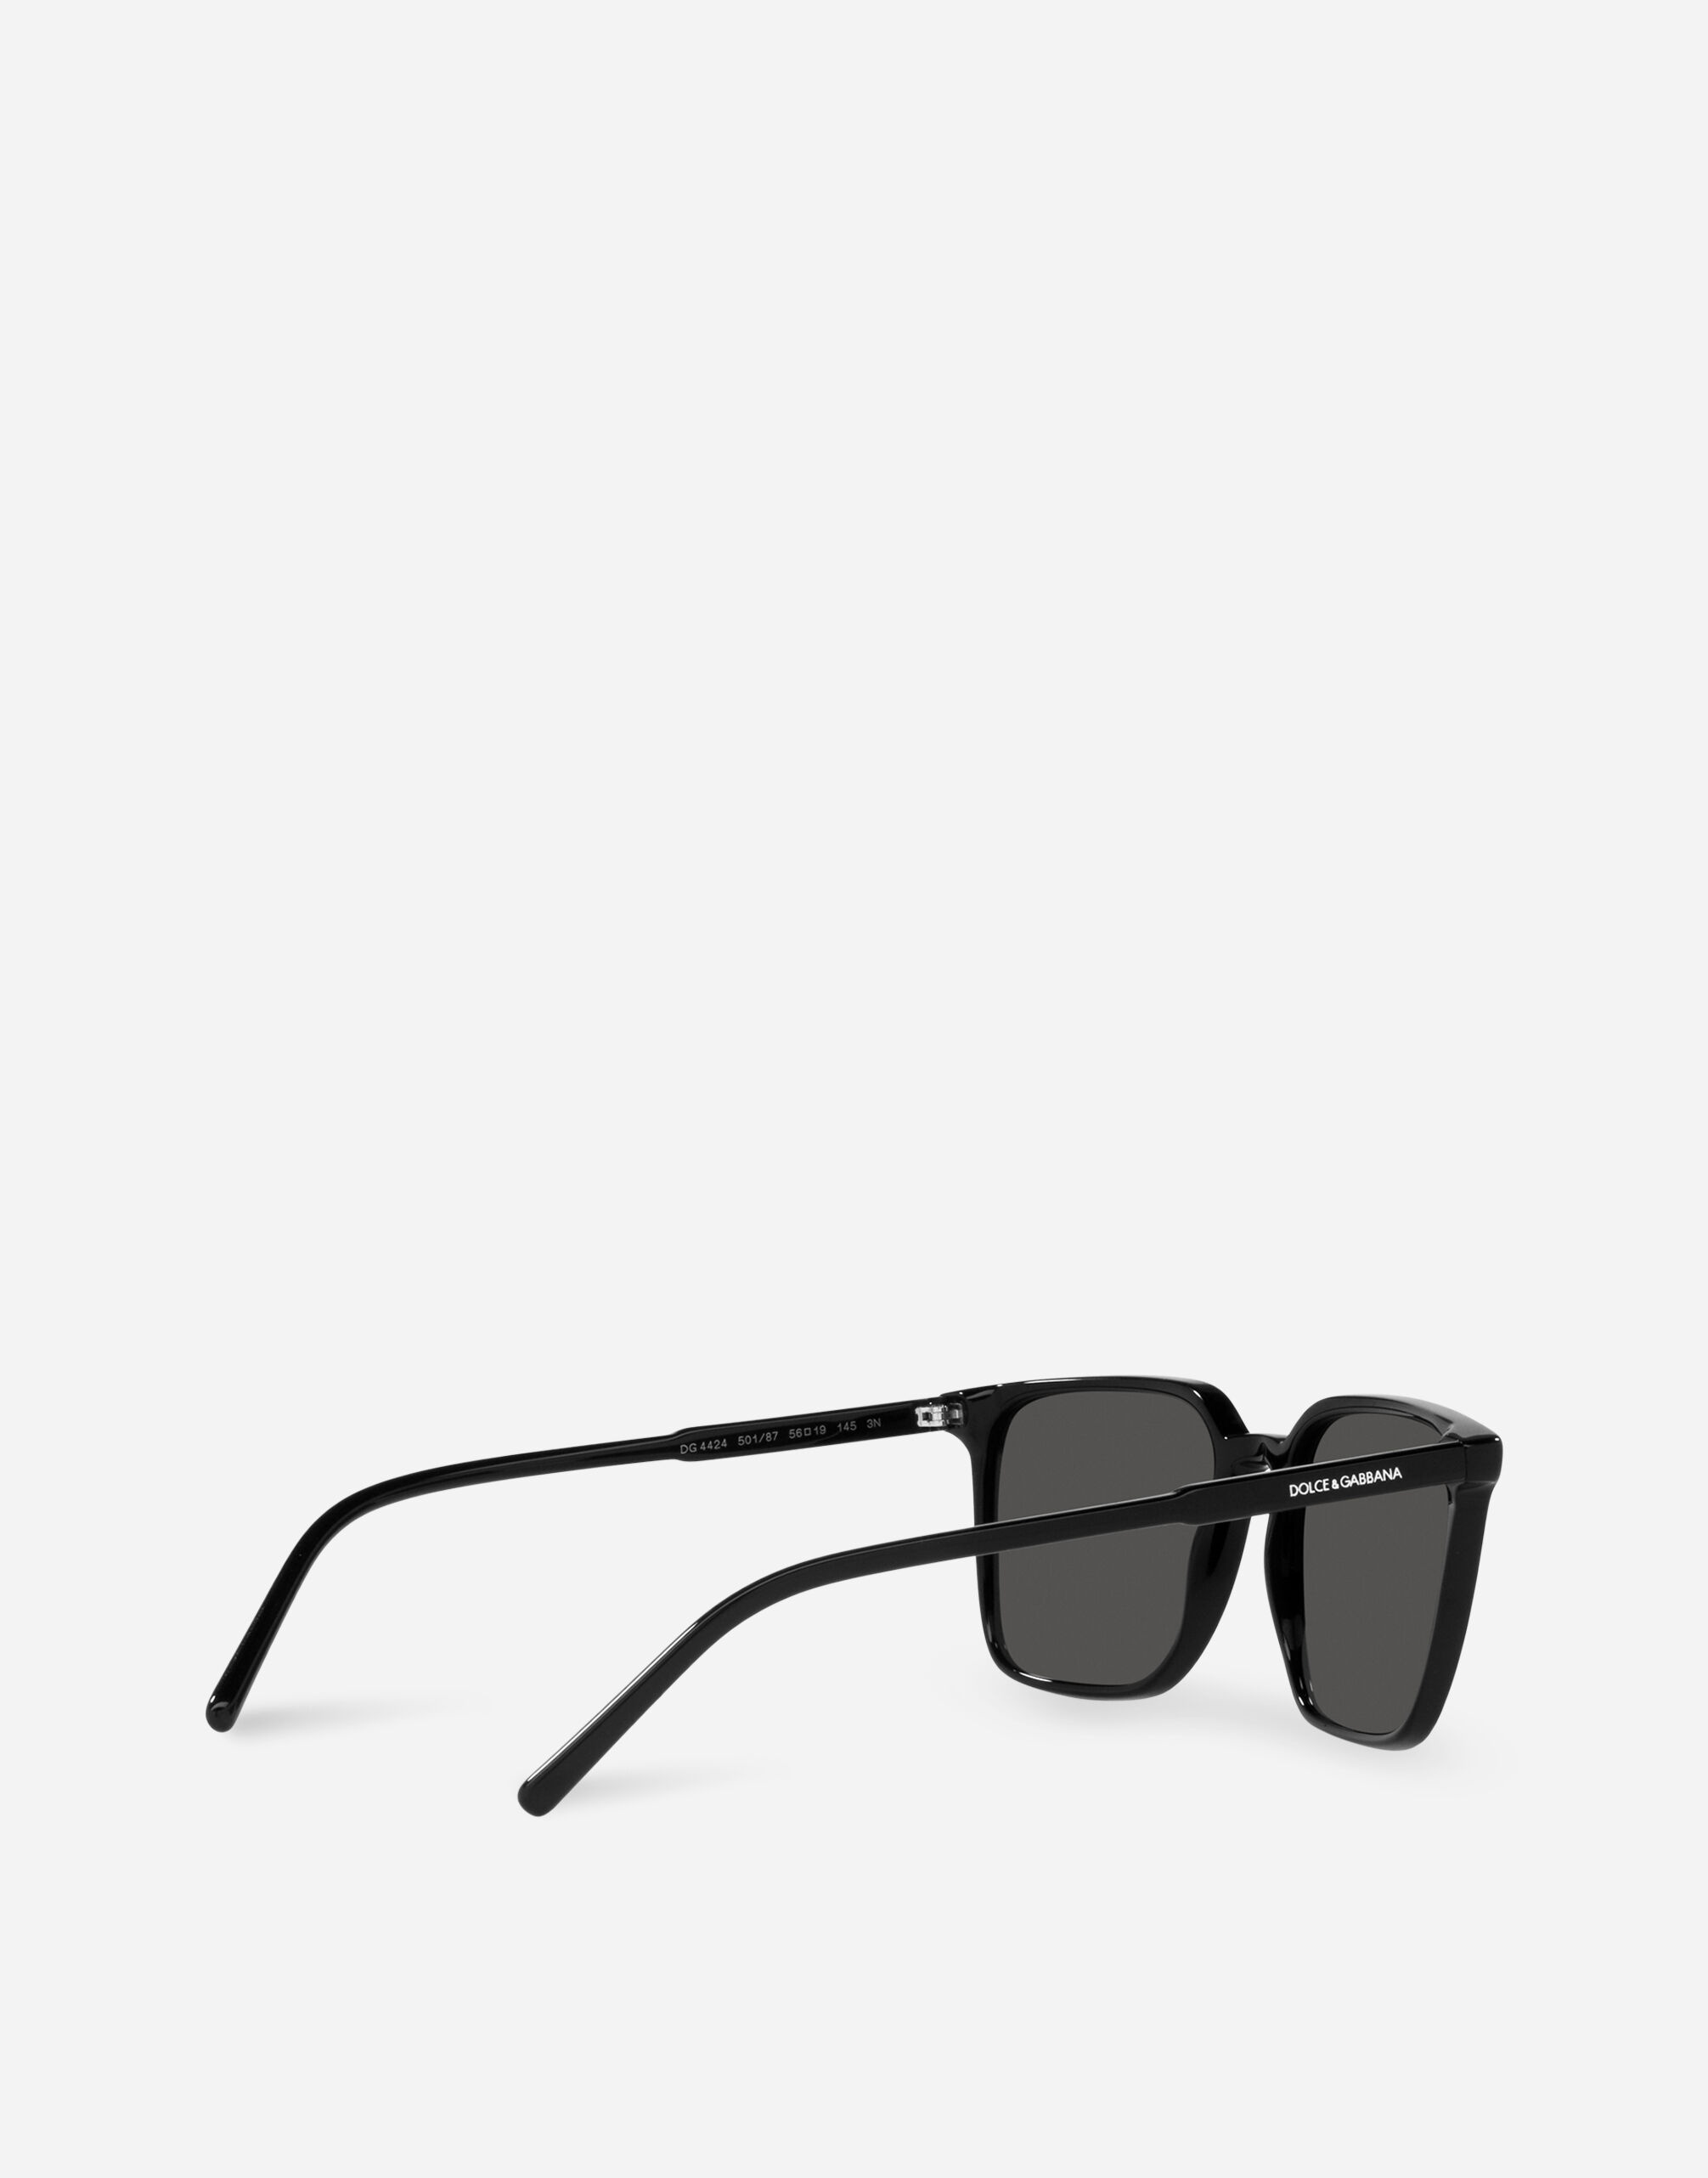 Thin profile sunglasses - 4